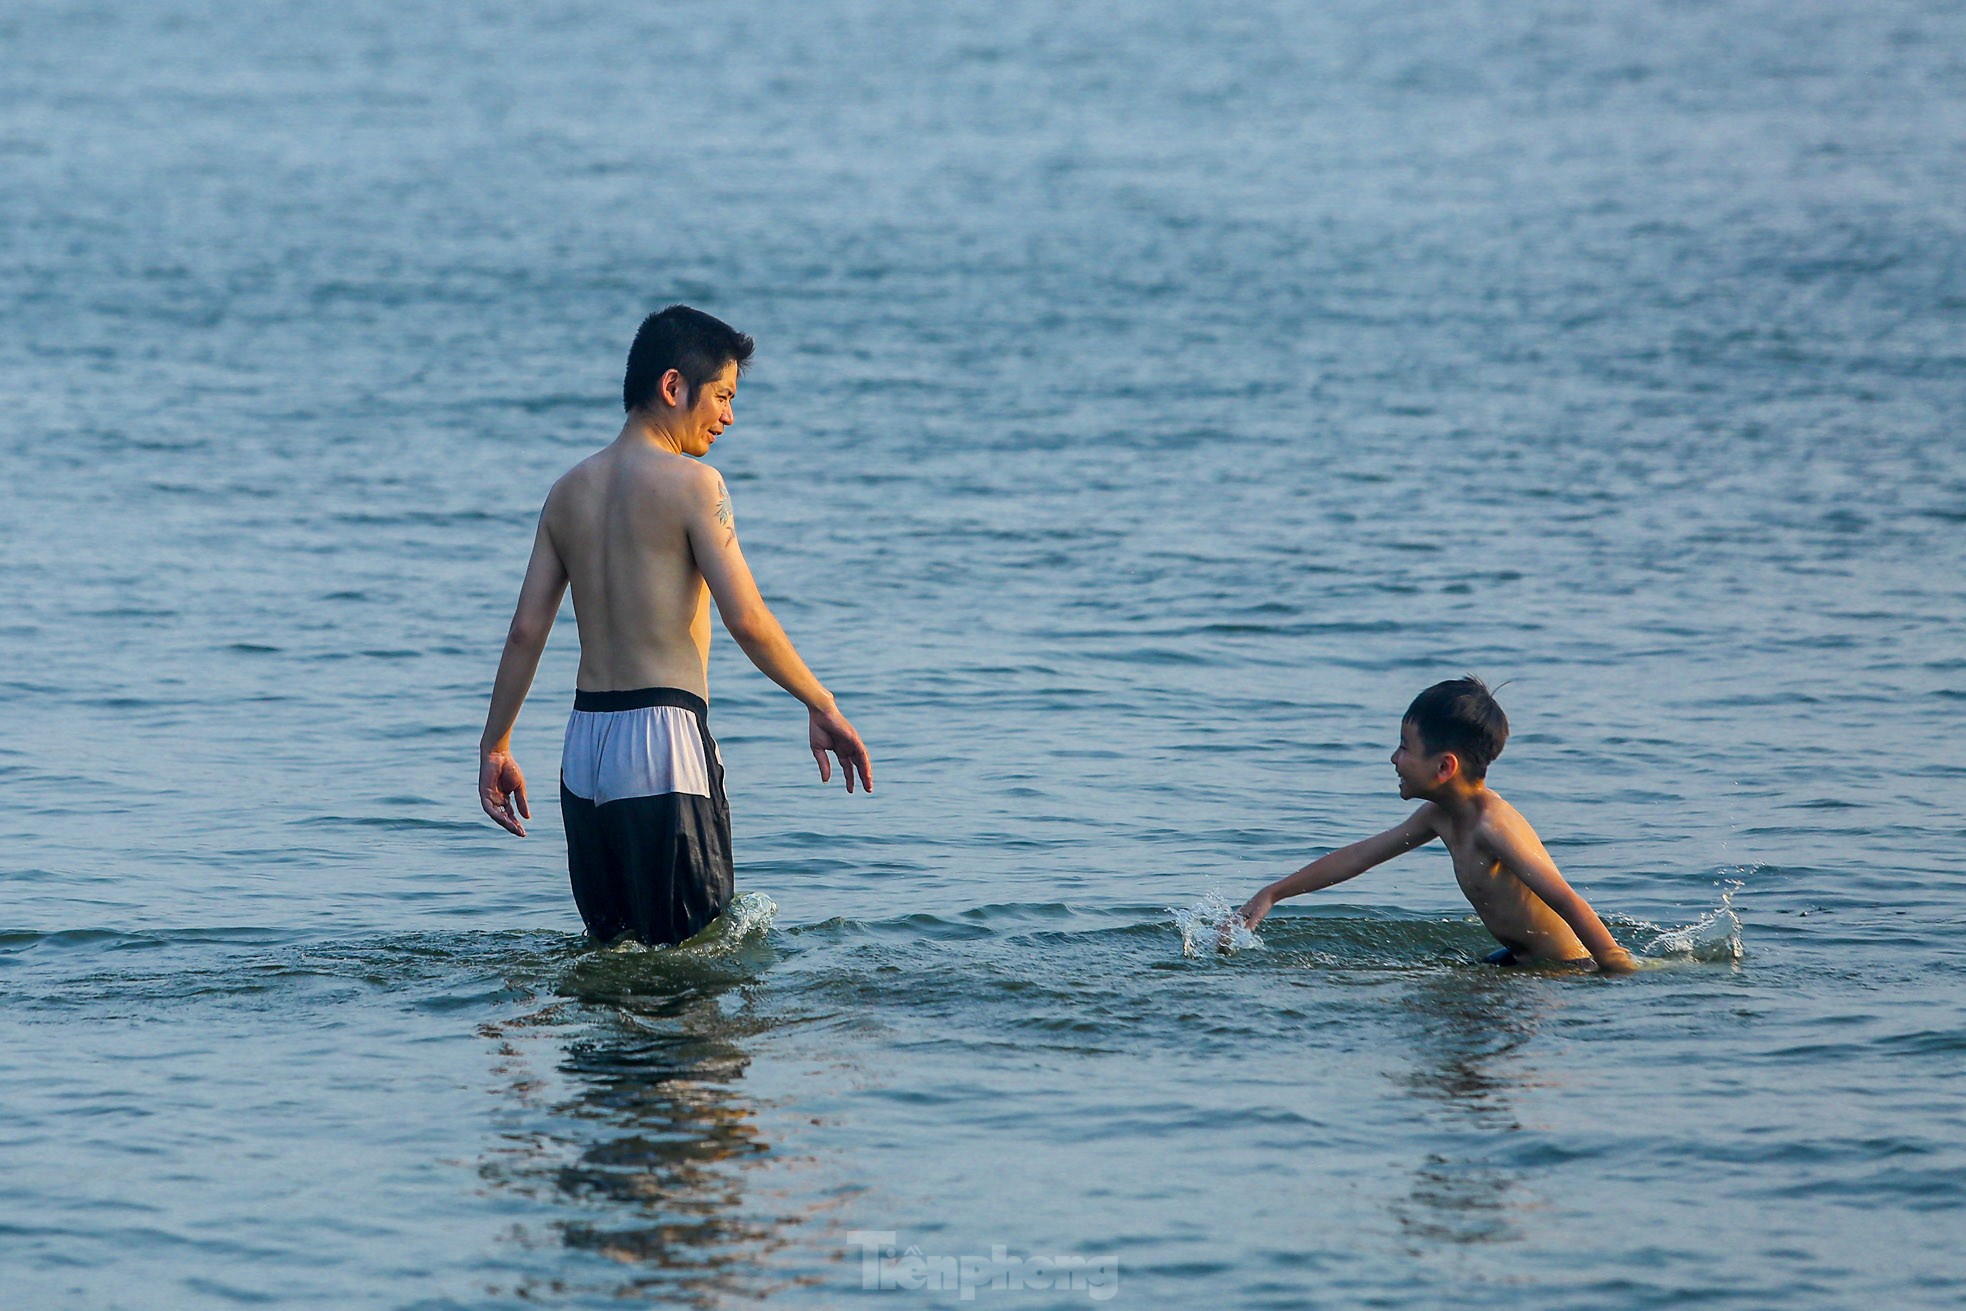 Nắng nóng oi bức, người Hà Nội 'biến' hồ Tây thành bể bơi giải nhiệt bất chấp lệnh cấm - Ảnh 6.